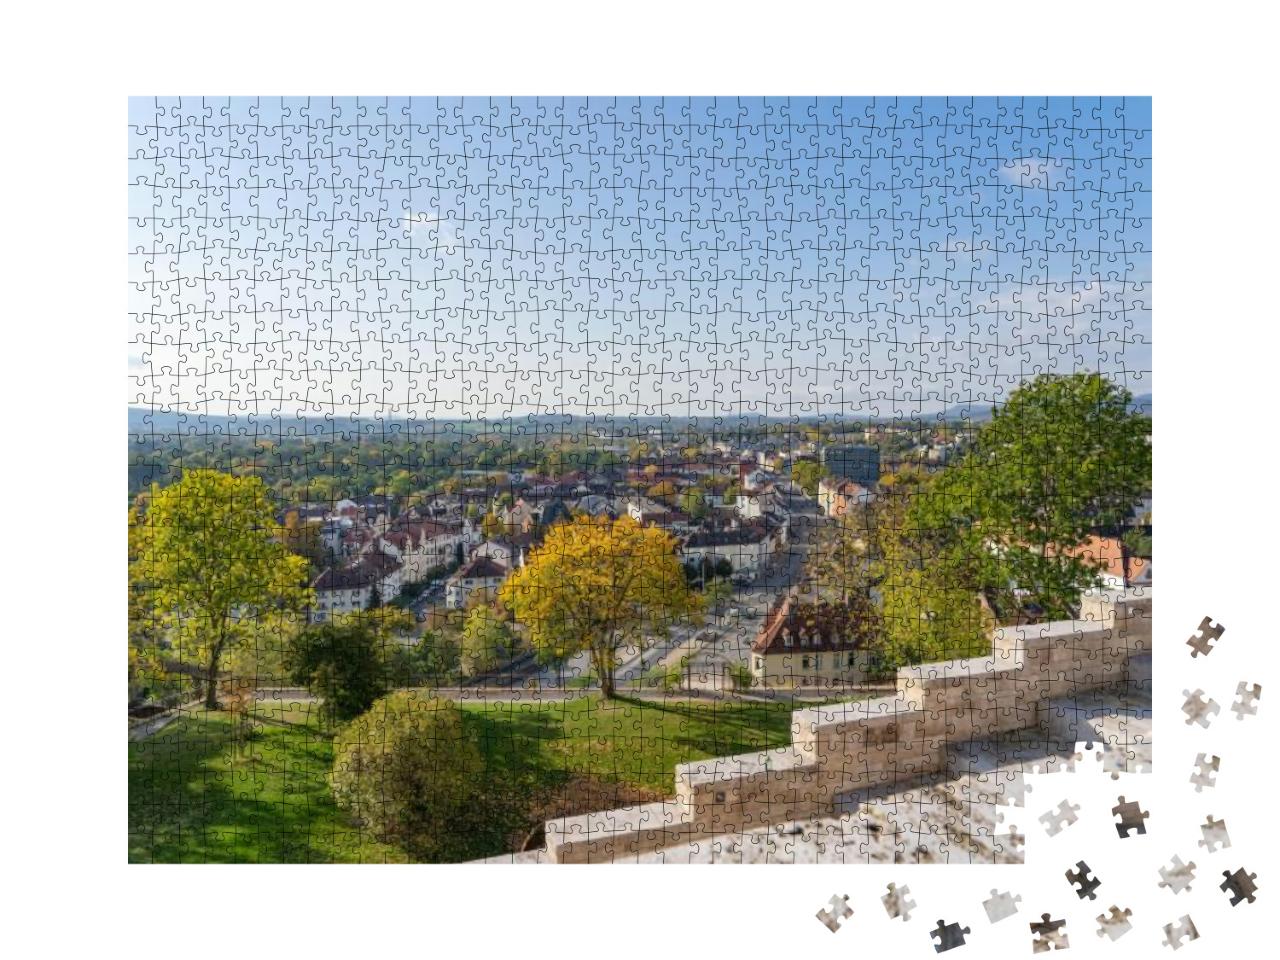 Puzzle 1000 Teile „Blick auf die Stadt Kassel, Deutschland“